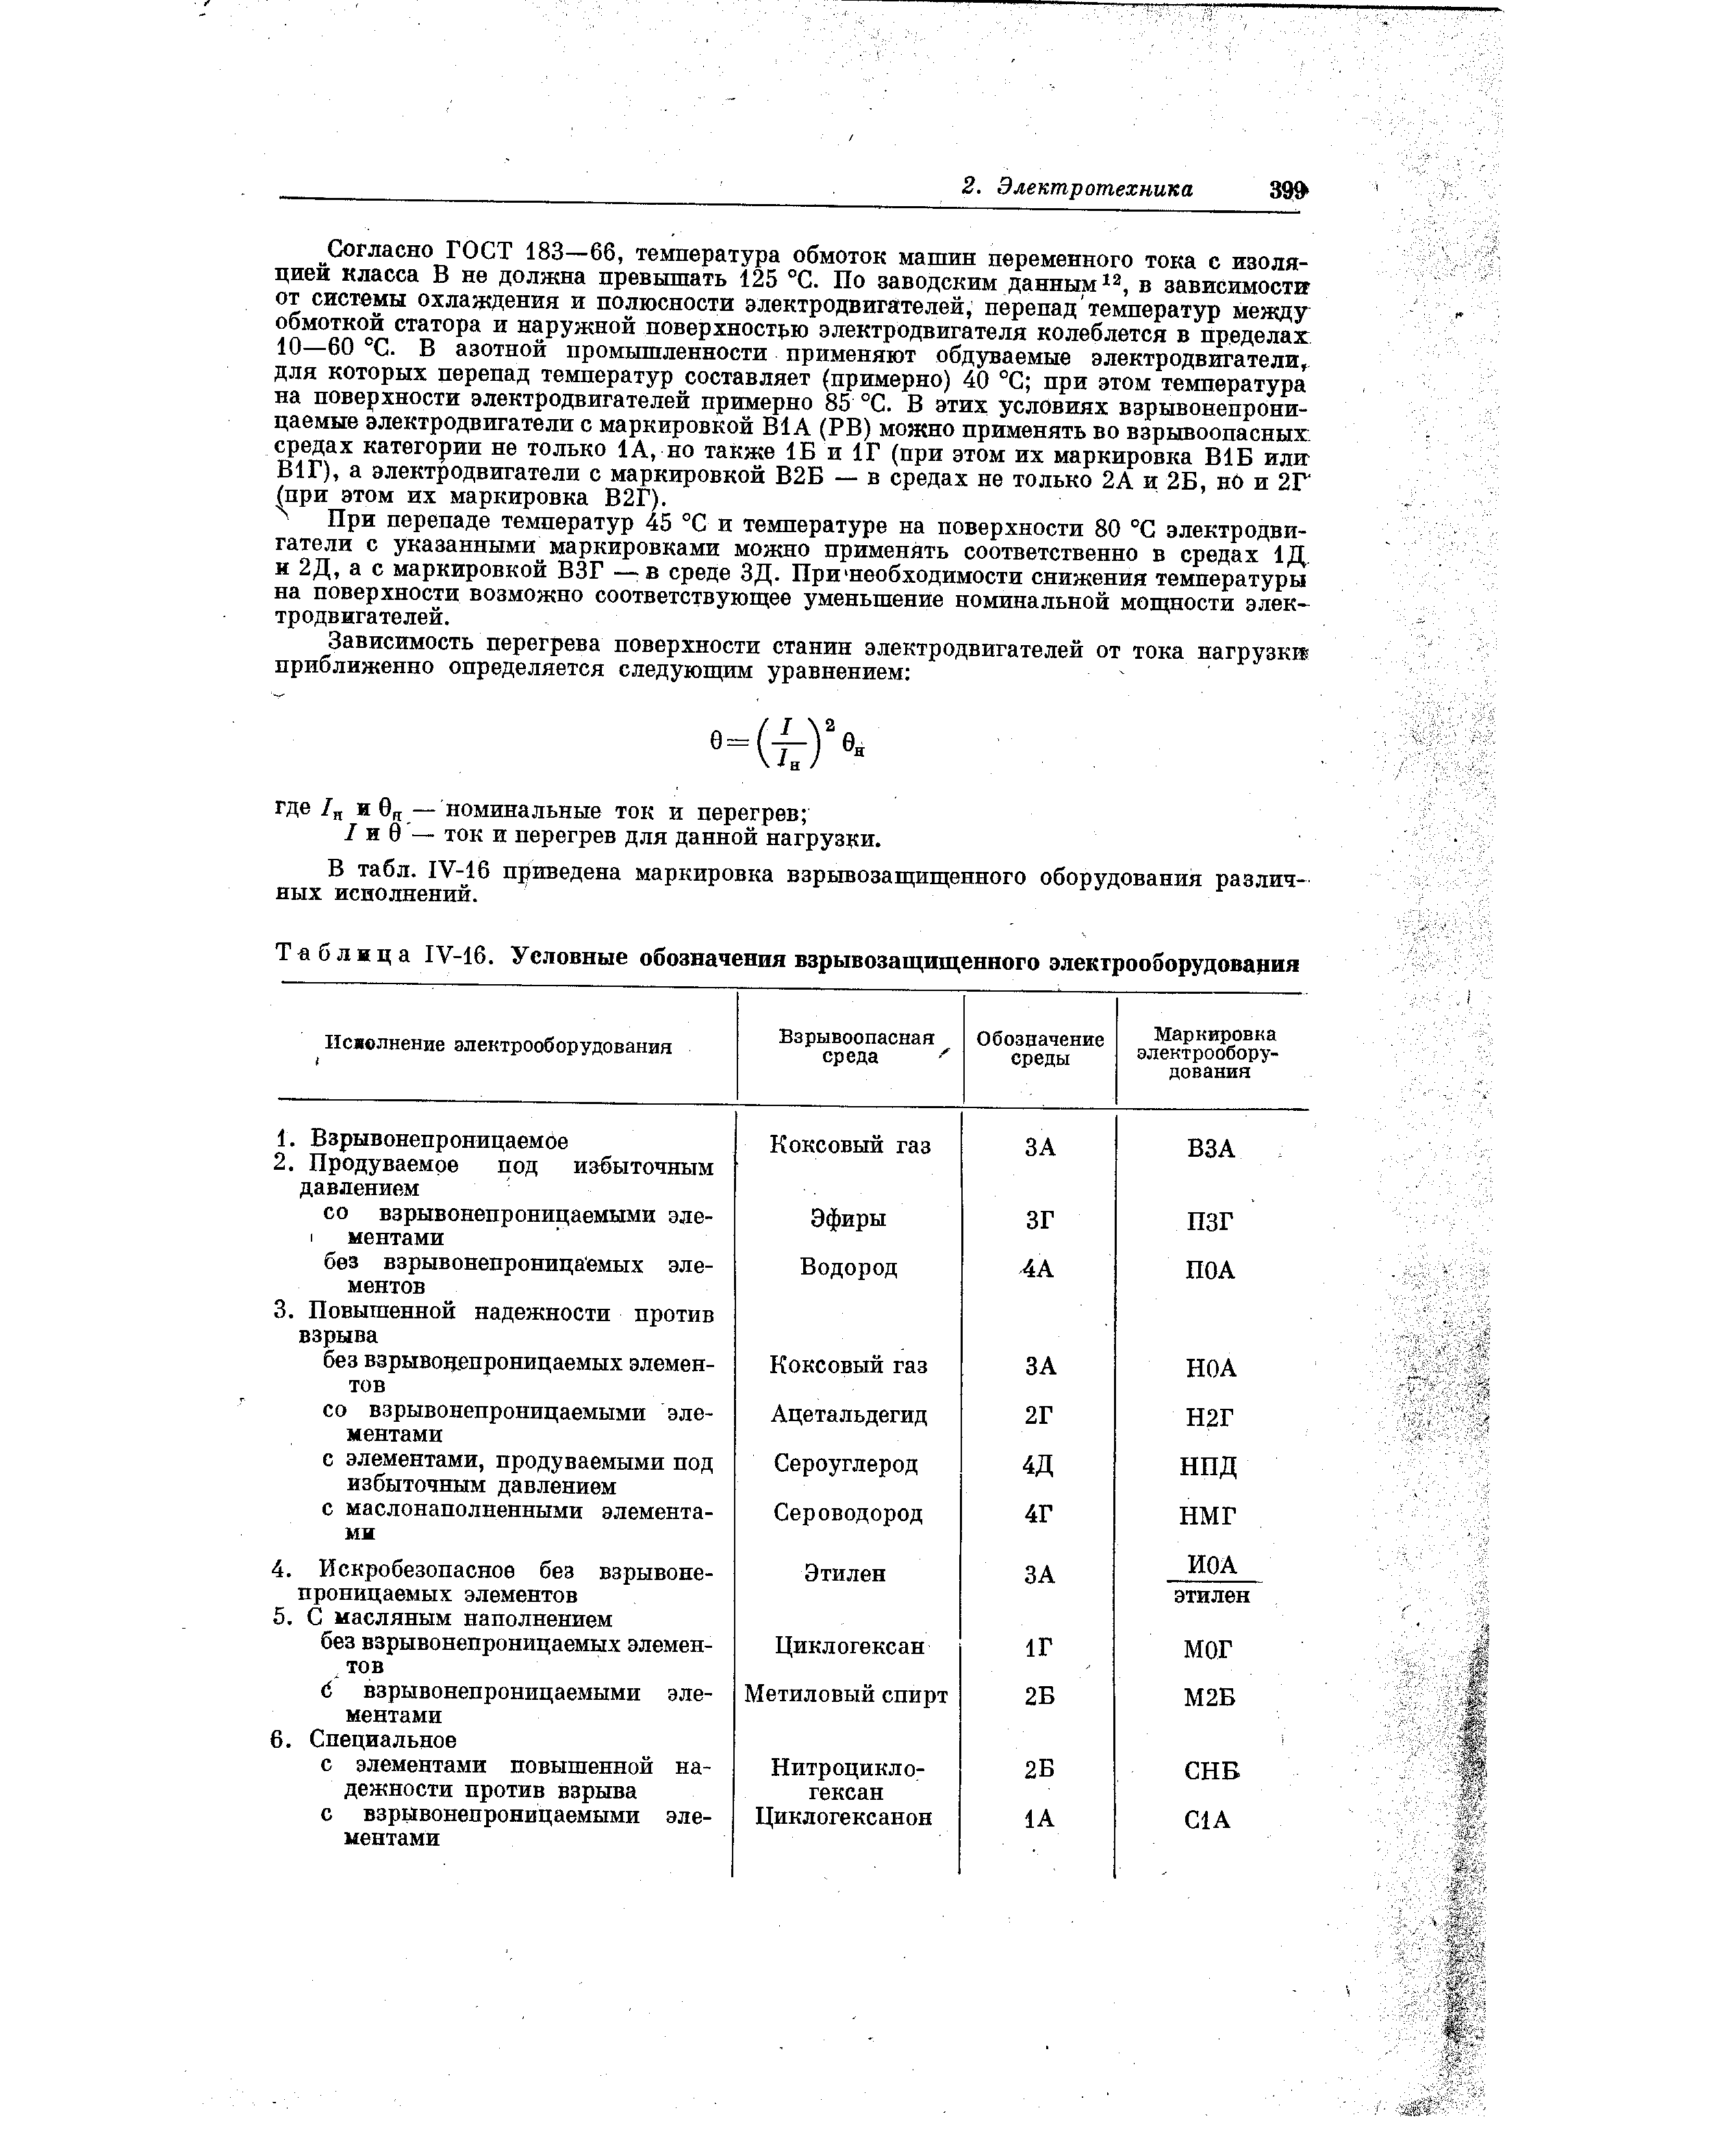 Таблица IV-16. Условные обозначения взрывозащищенного электрооборудования
